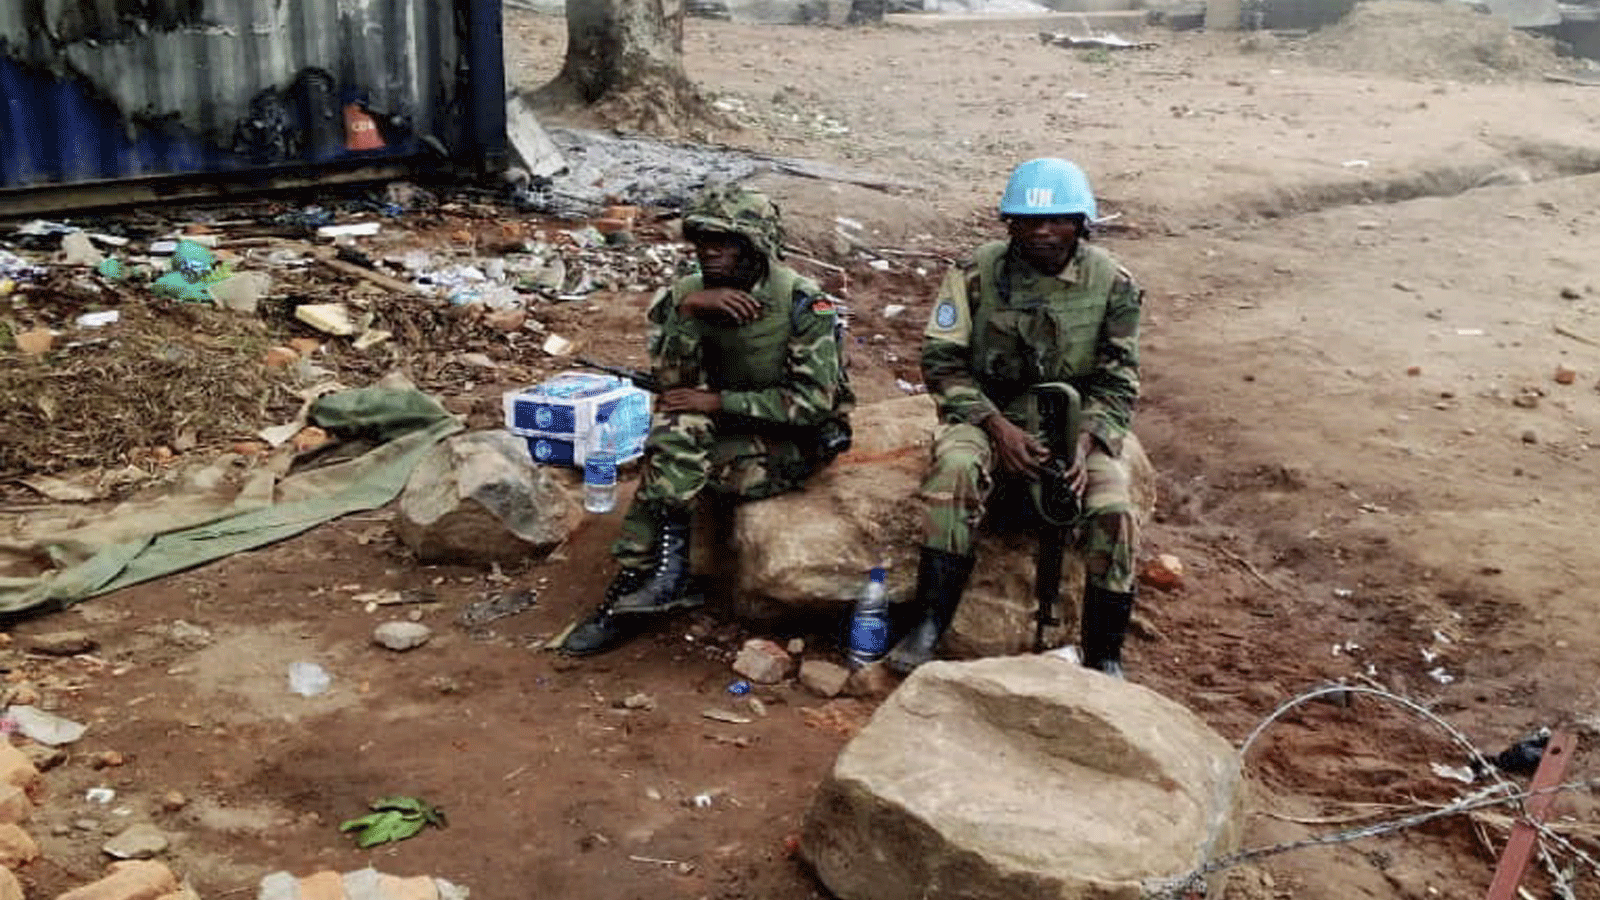 جنود من قوات حفظ السلام يجلسون في قاعدة تابعة للأمم المتحدة في بيني بجمهورية الكونغو الديمقراطية. 25 نوفمبر\ تشرين الثاني 2019